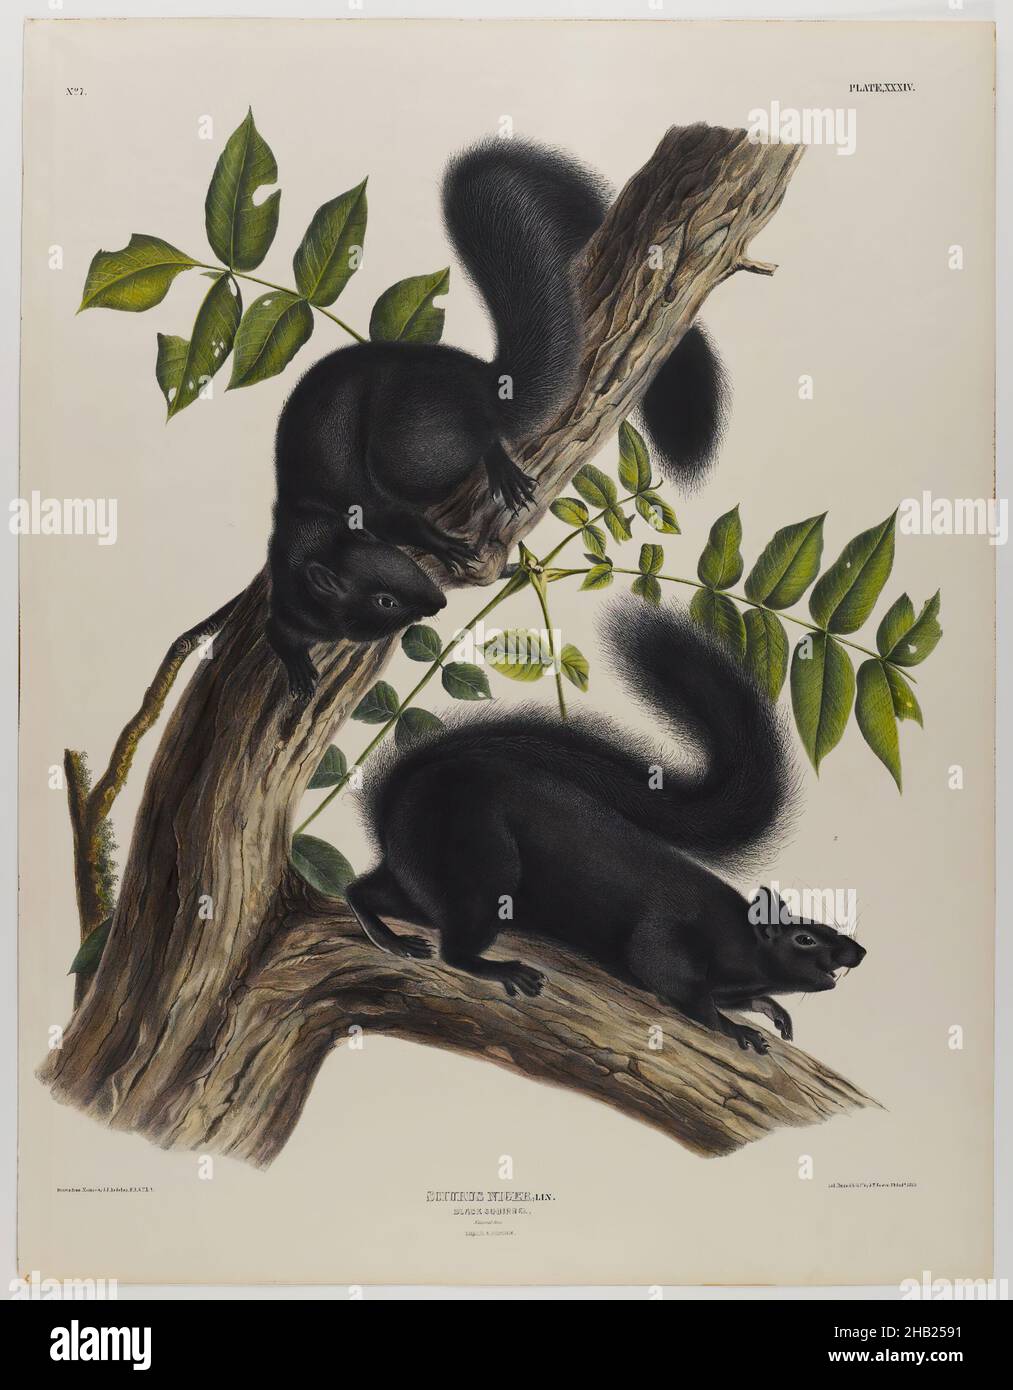 Black Squirrel, John James Audubon, américain, né en Haïti, 1785-1851,Lithographie, 27 x 21 po., 68,6 x 53,3 cm, frêne, faune, flore, mammifères,étude de la nature, rongeurs Banque D'Images